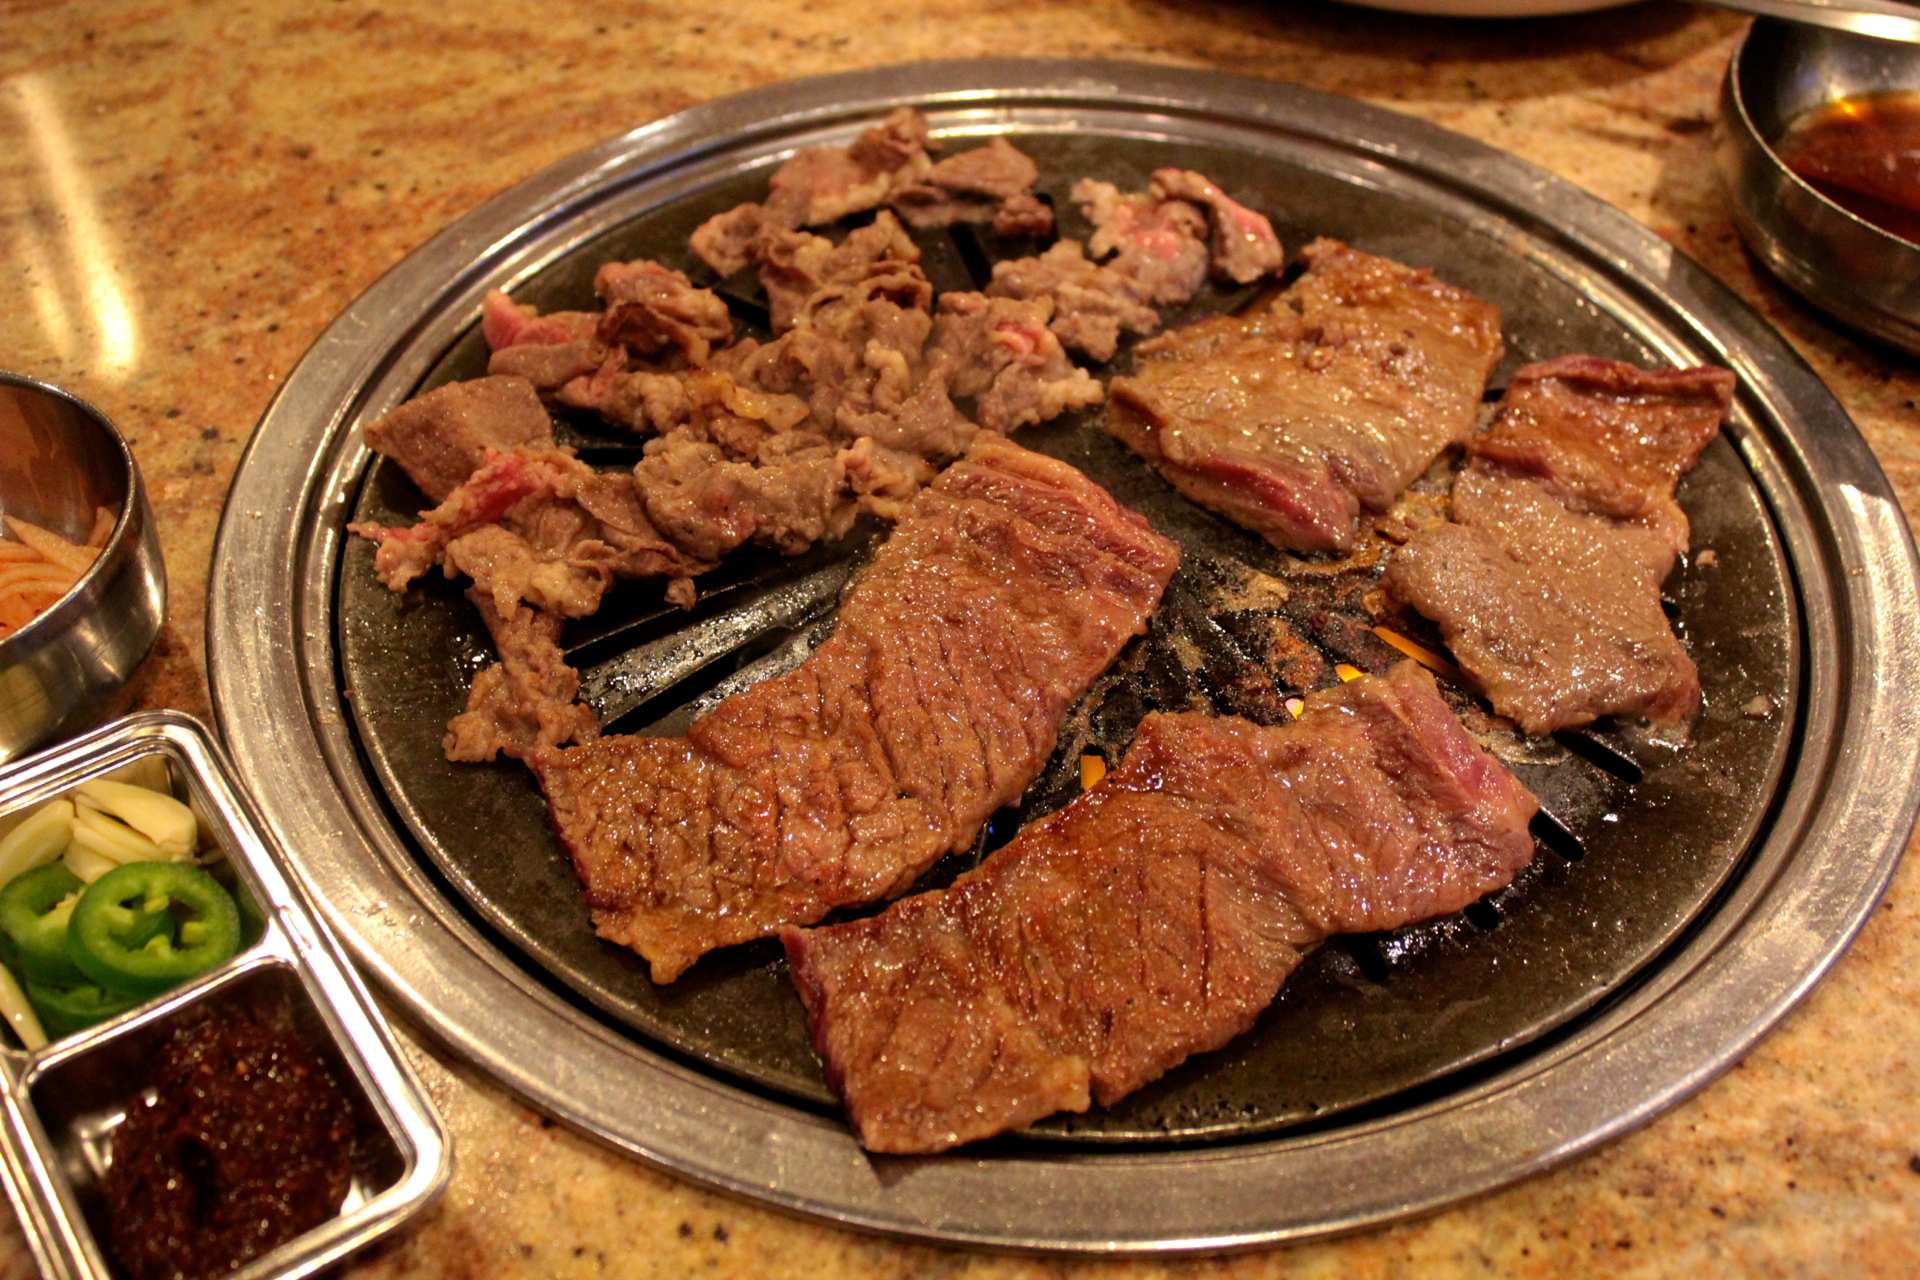 Marinated short rib and beef bulgogi cooking on the grill at Jang Su Jang.